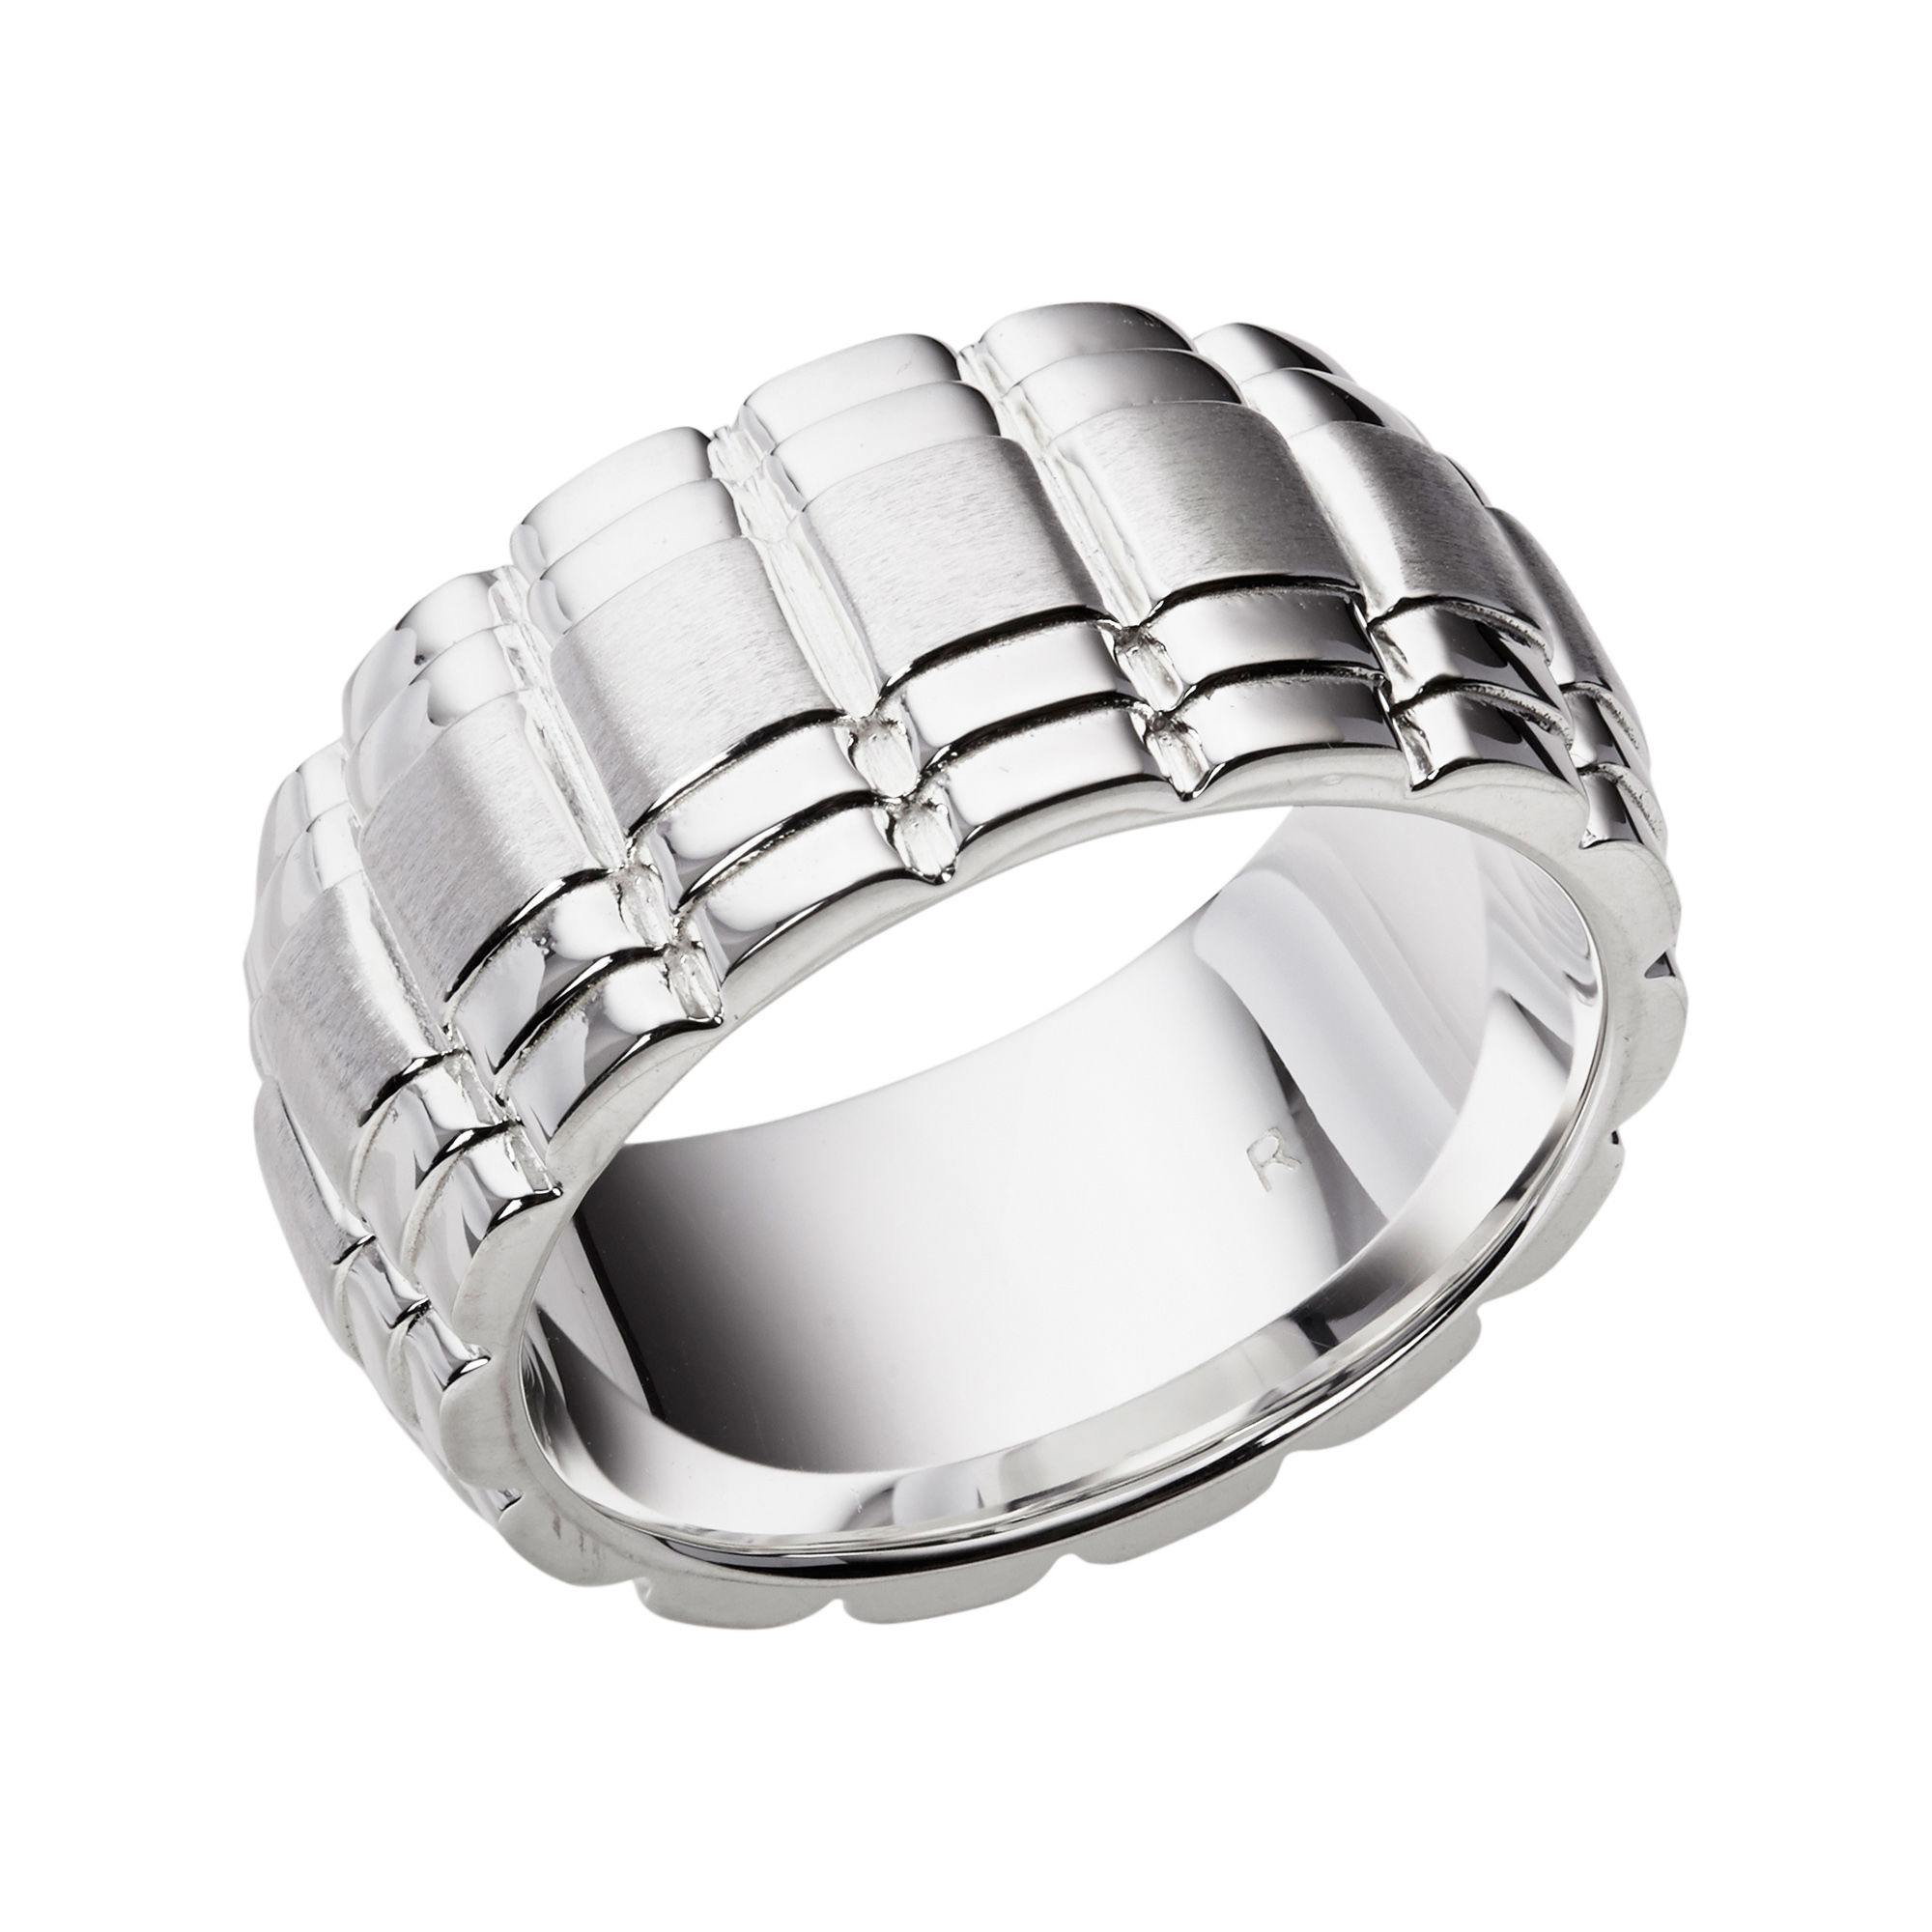 Venture Silver Ring |Rings for Men | Links of London